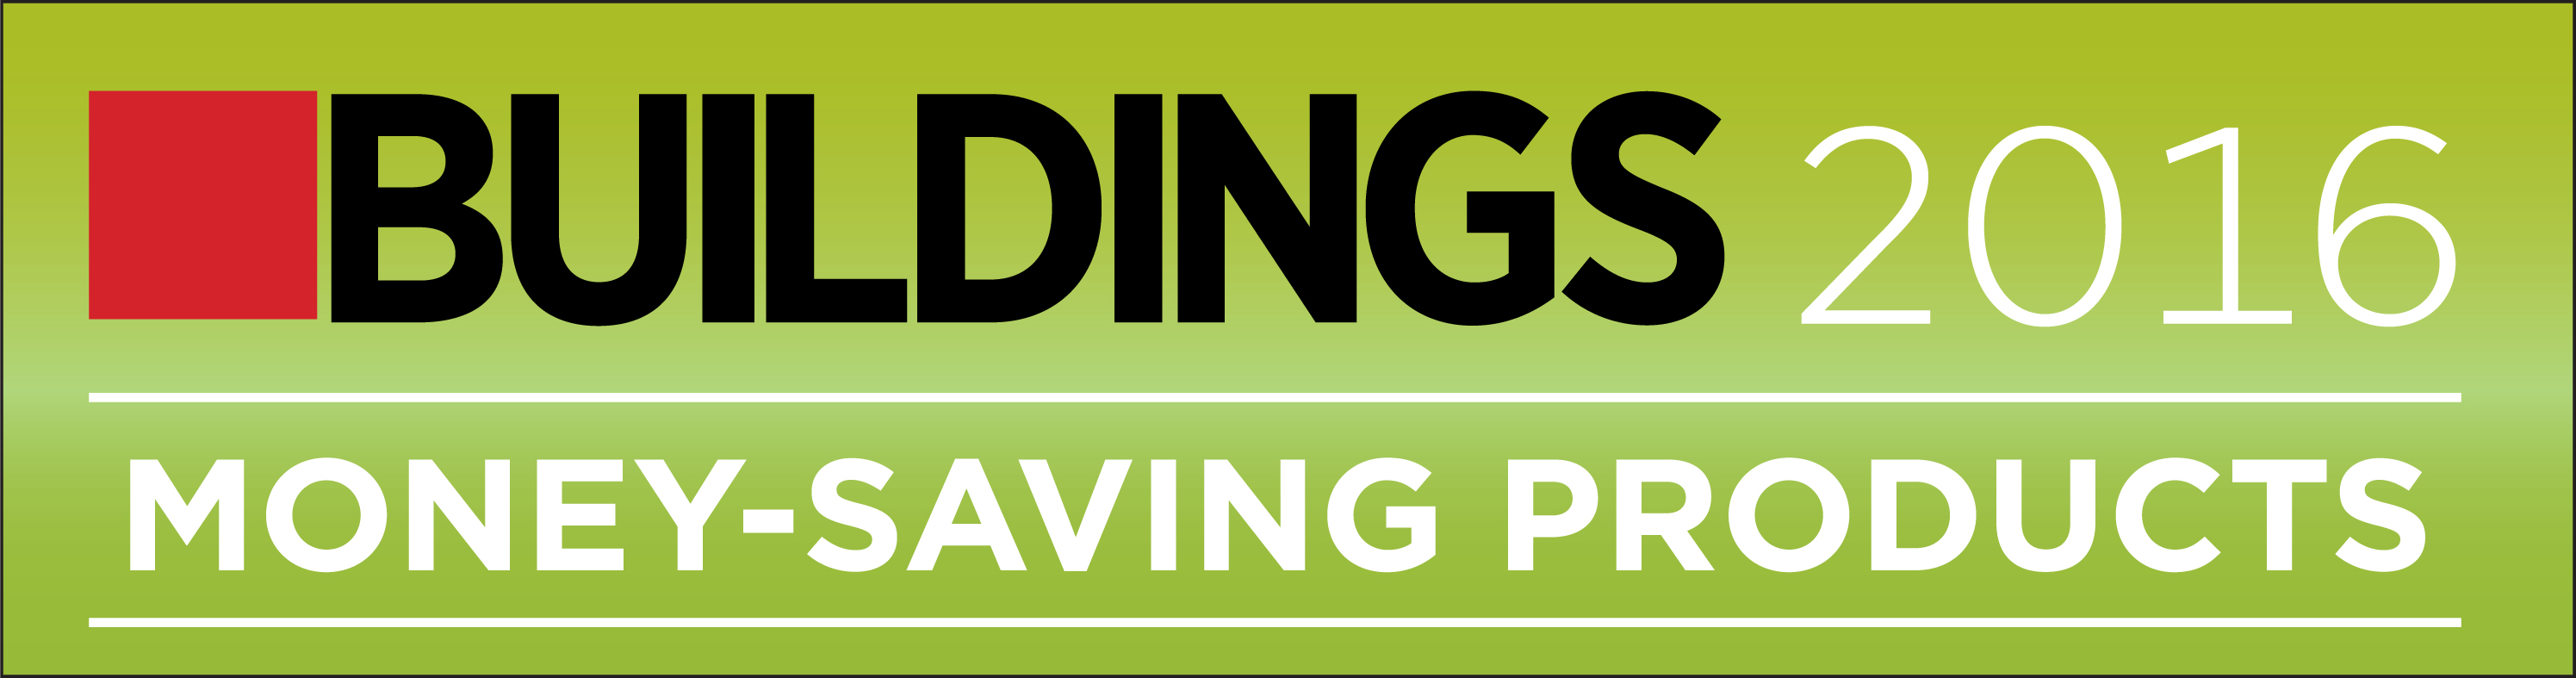 Buildings Money Savings Products 2016 Winner